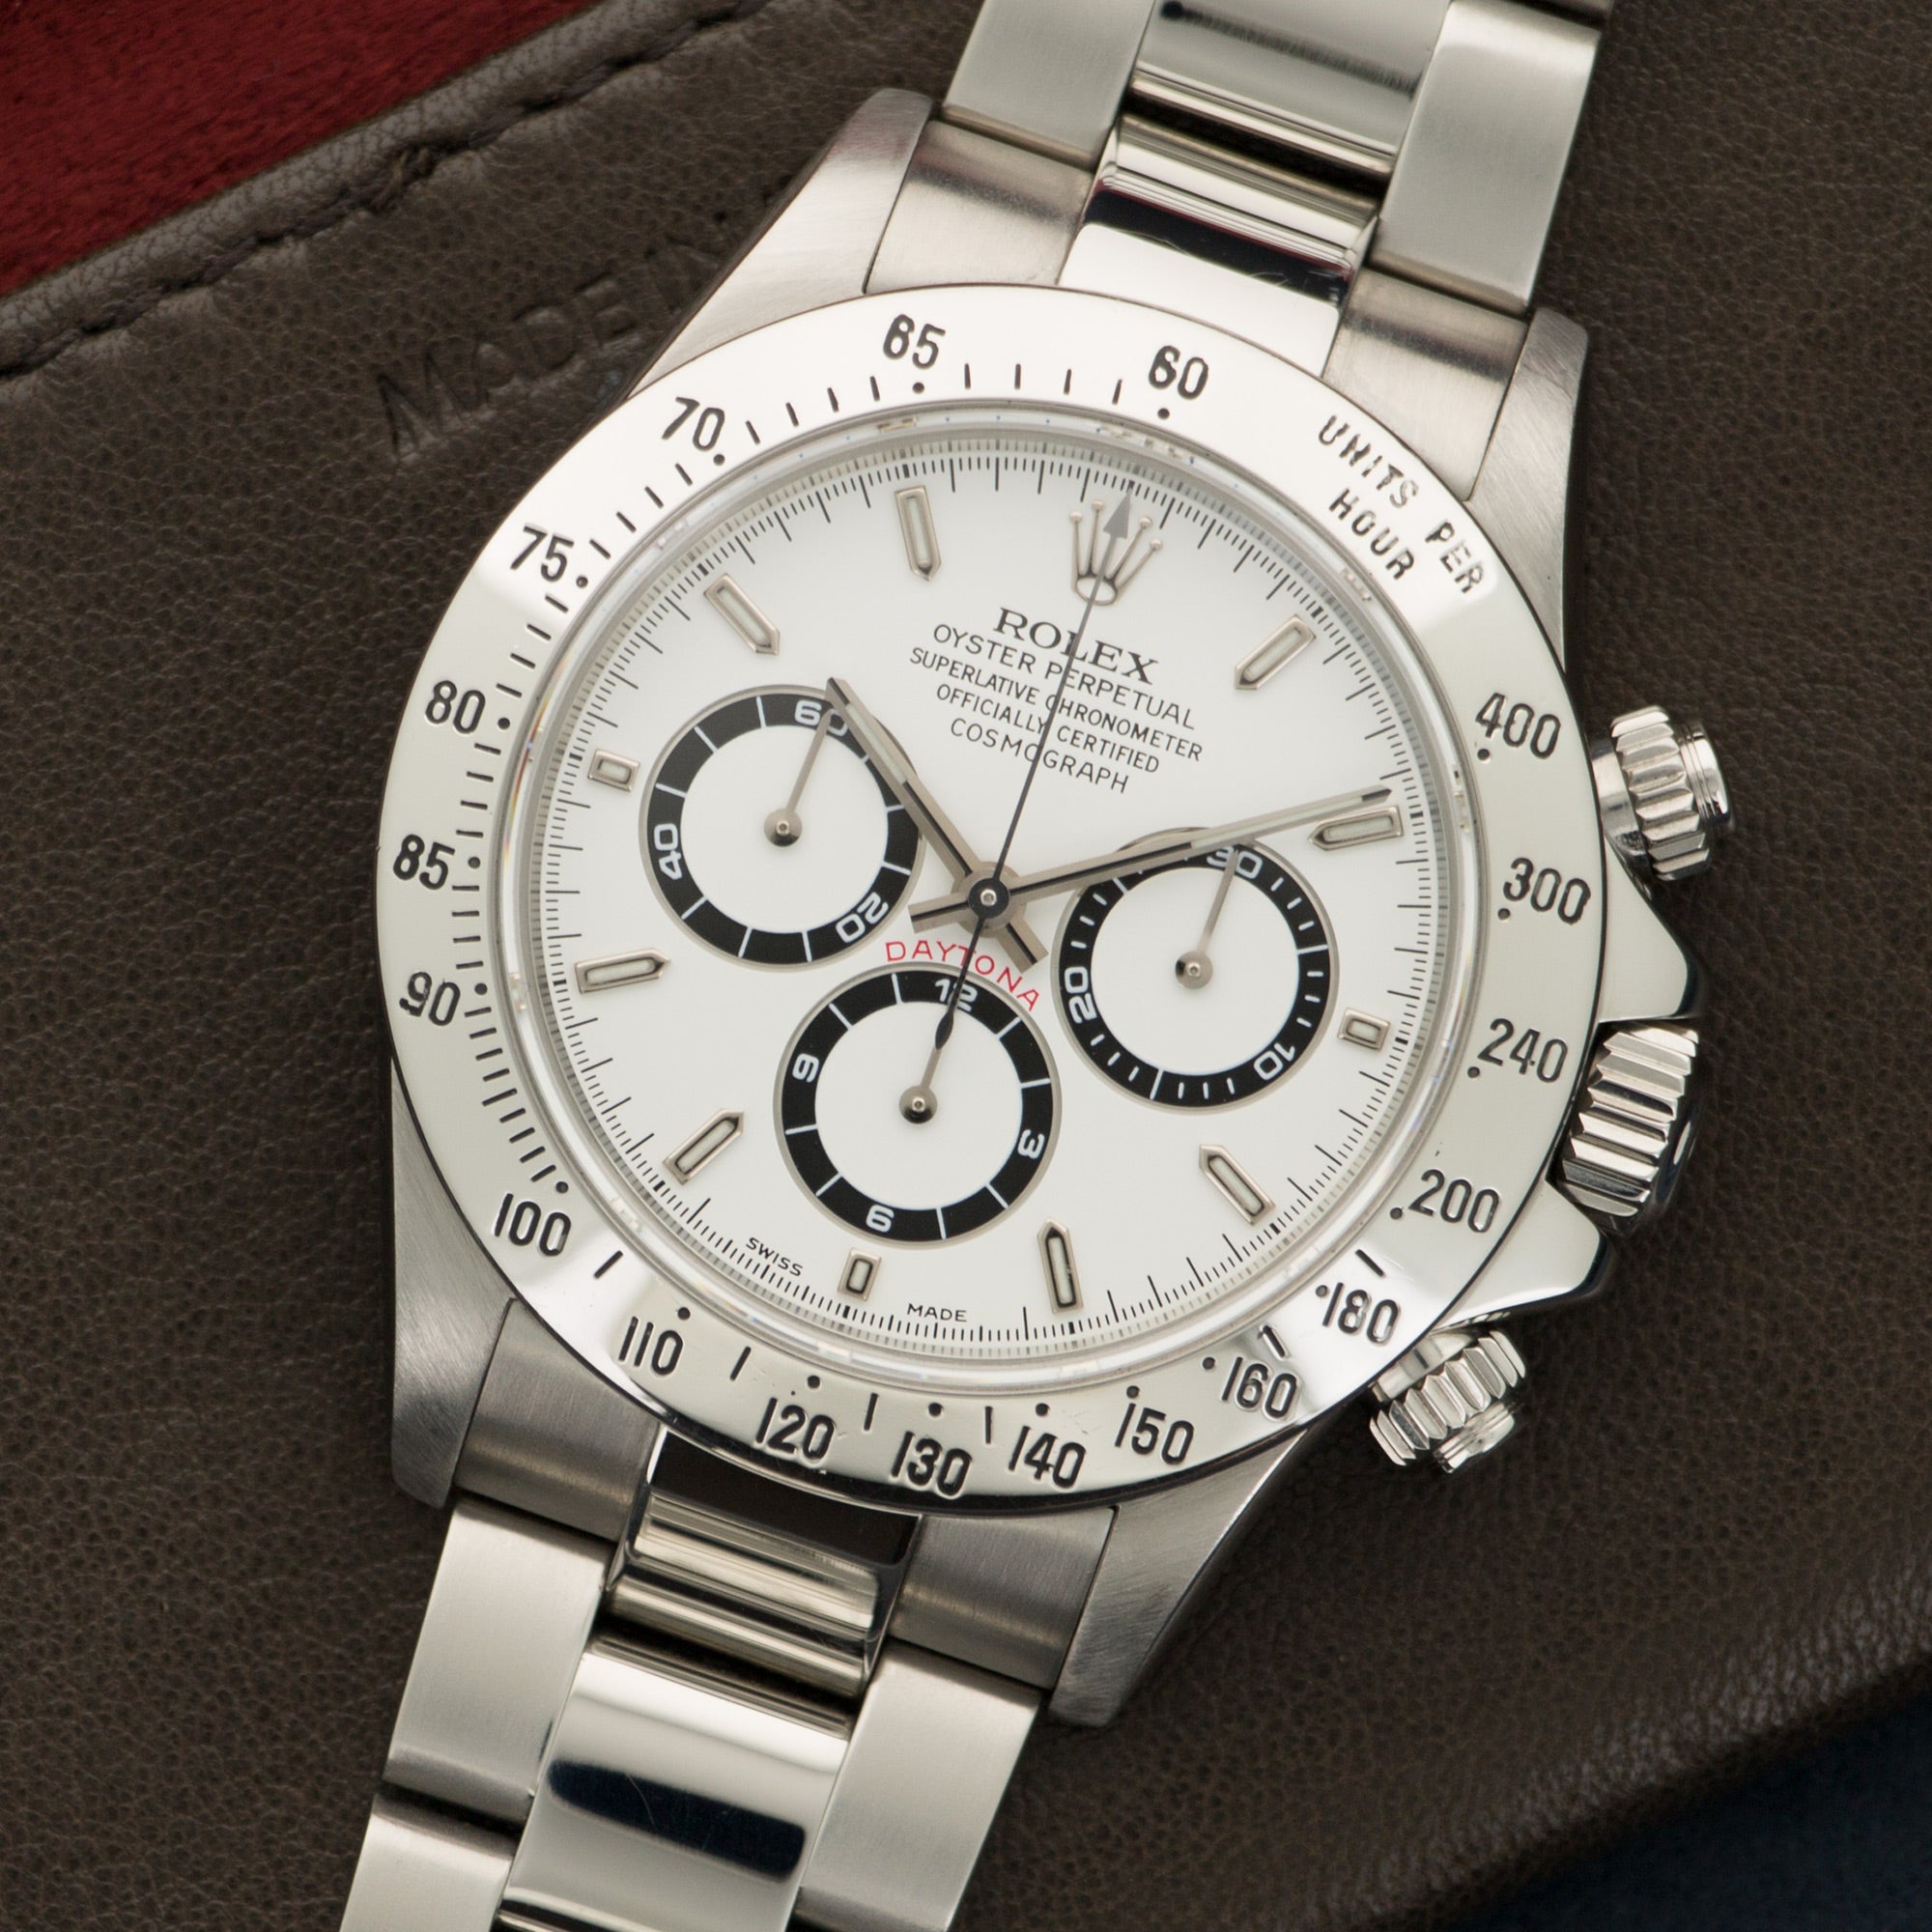 Rolex - Rolex Cosmograph Daytona P-Series Zenith Watch Ref. 16520 - The Keystone Watches